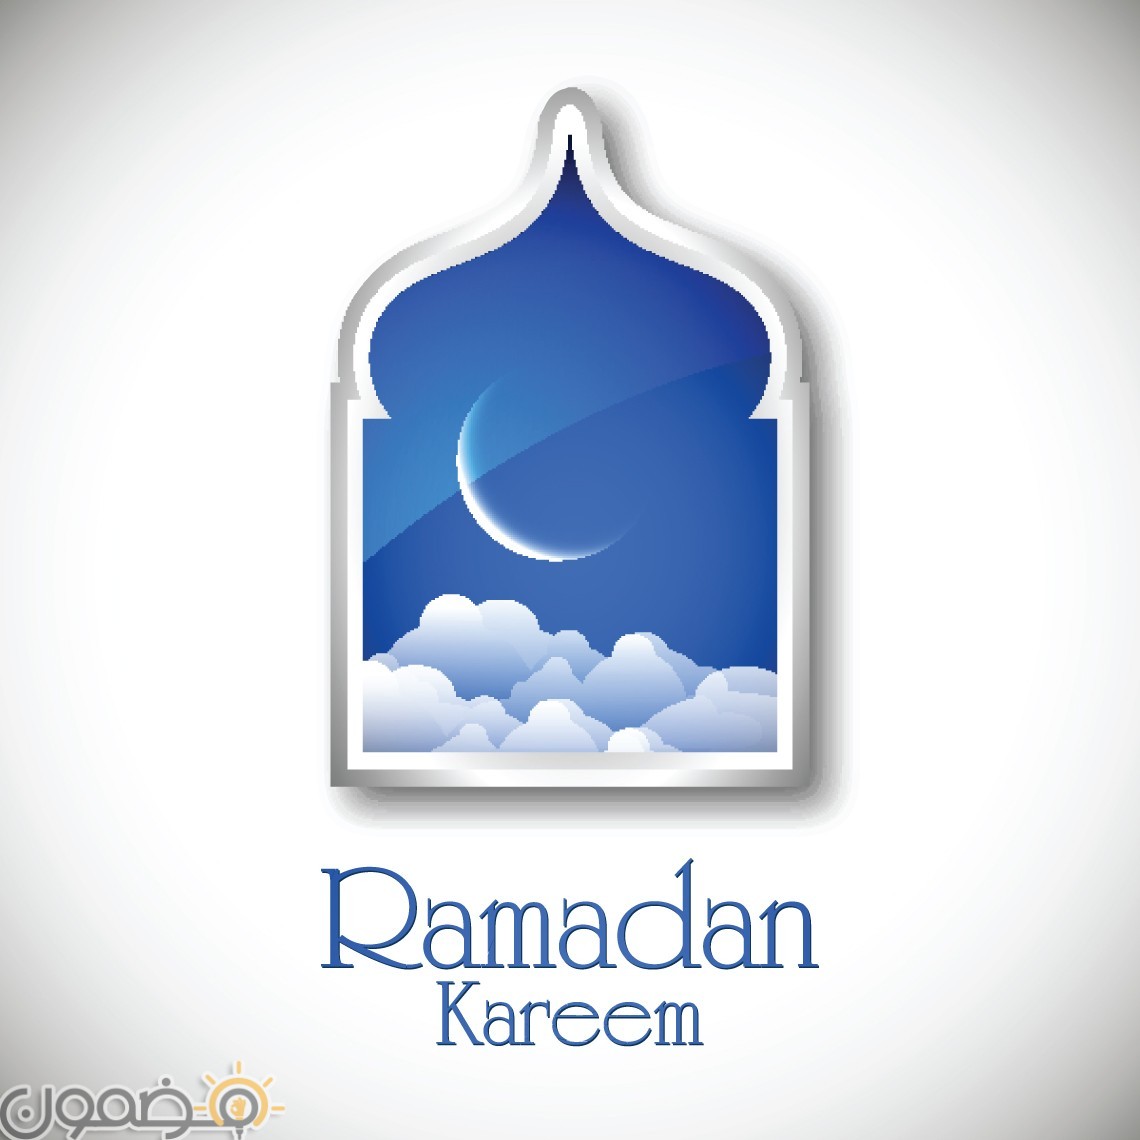 خلفيات رمضان 3d 5 خلفيات رمضان 3d للفيس بوك و للموبايل